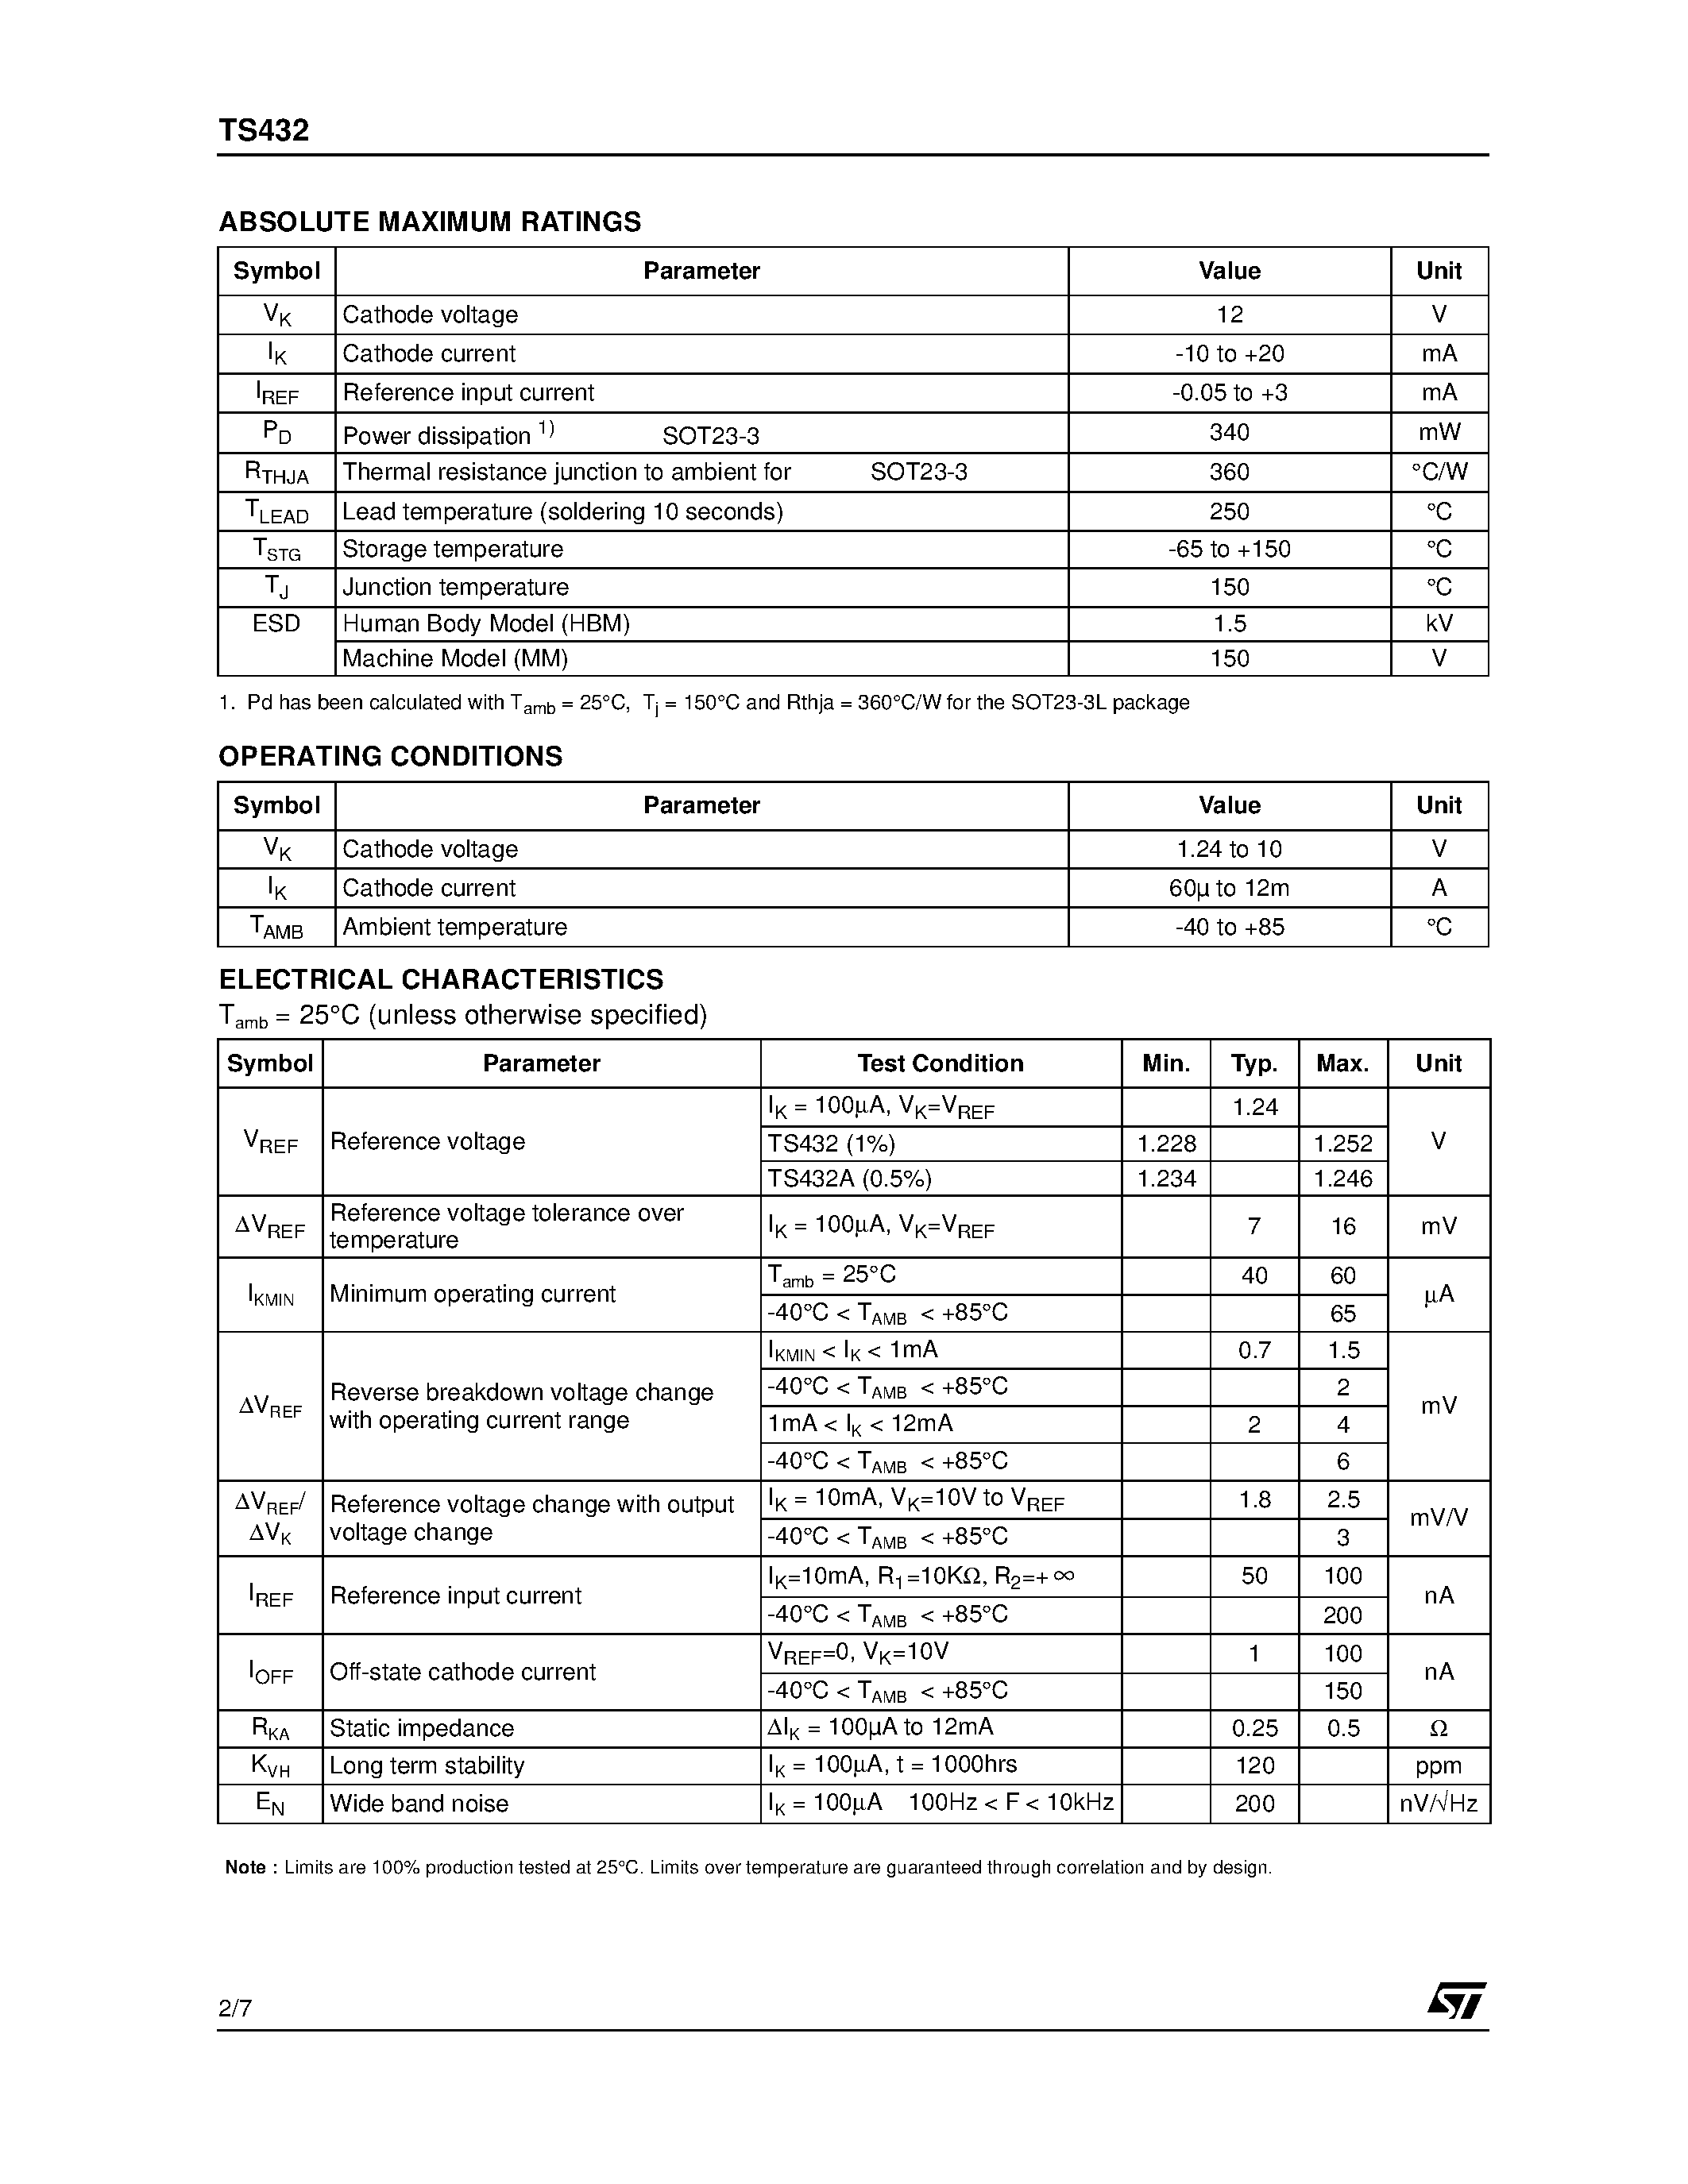 Datasheet TS432 - 1.24V ADJUSTABLE SHUNT VOLTAGE REFERENCE page 2